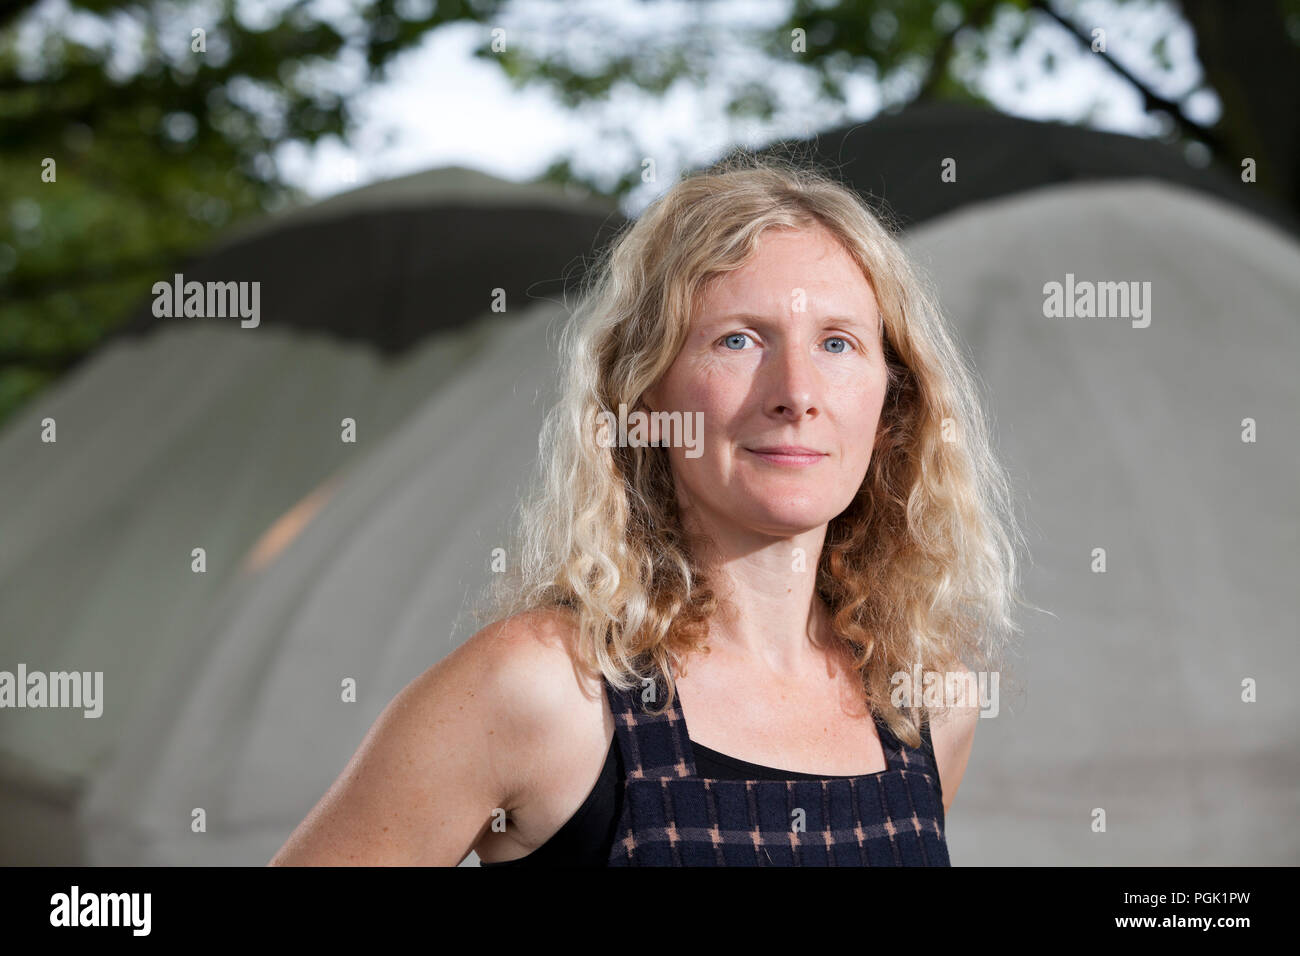 Edinburgh, Royaume-Uni. 27 août, 2018. Samantha Harvey, est un auteur anglais. Photographié à l'Edinburgh International Book Festival. Edimbourg, Ecosse. Photo par Gary Doak / Alamy Live News Banque D'Images